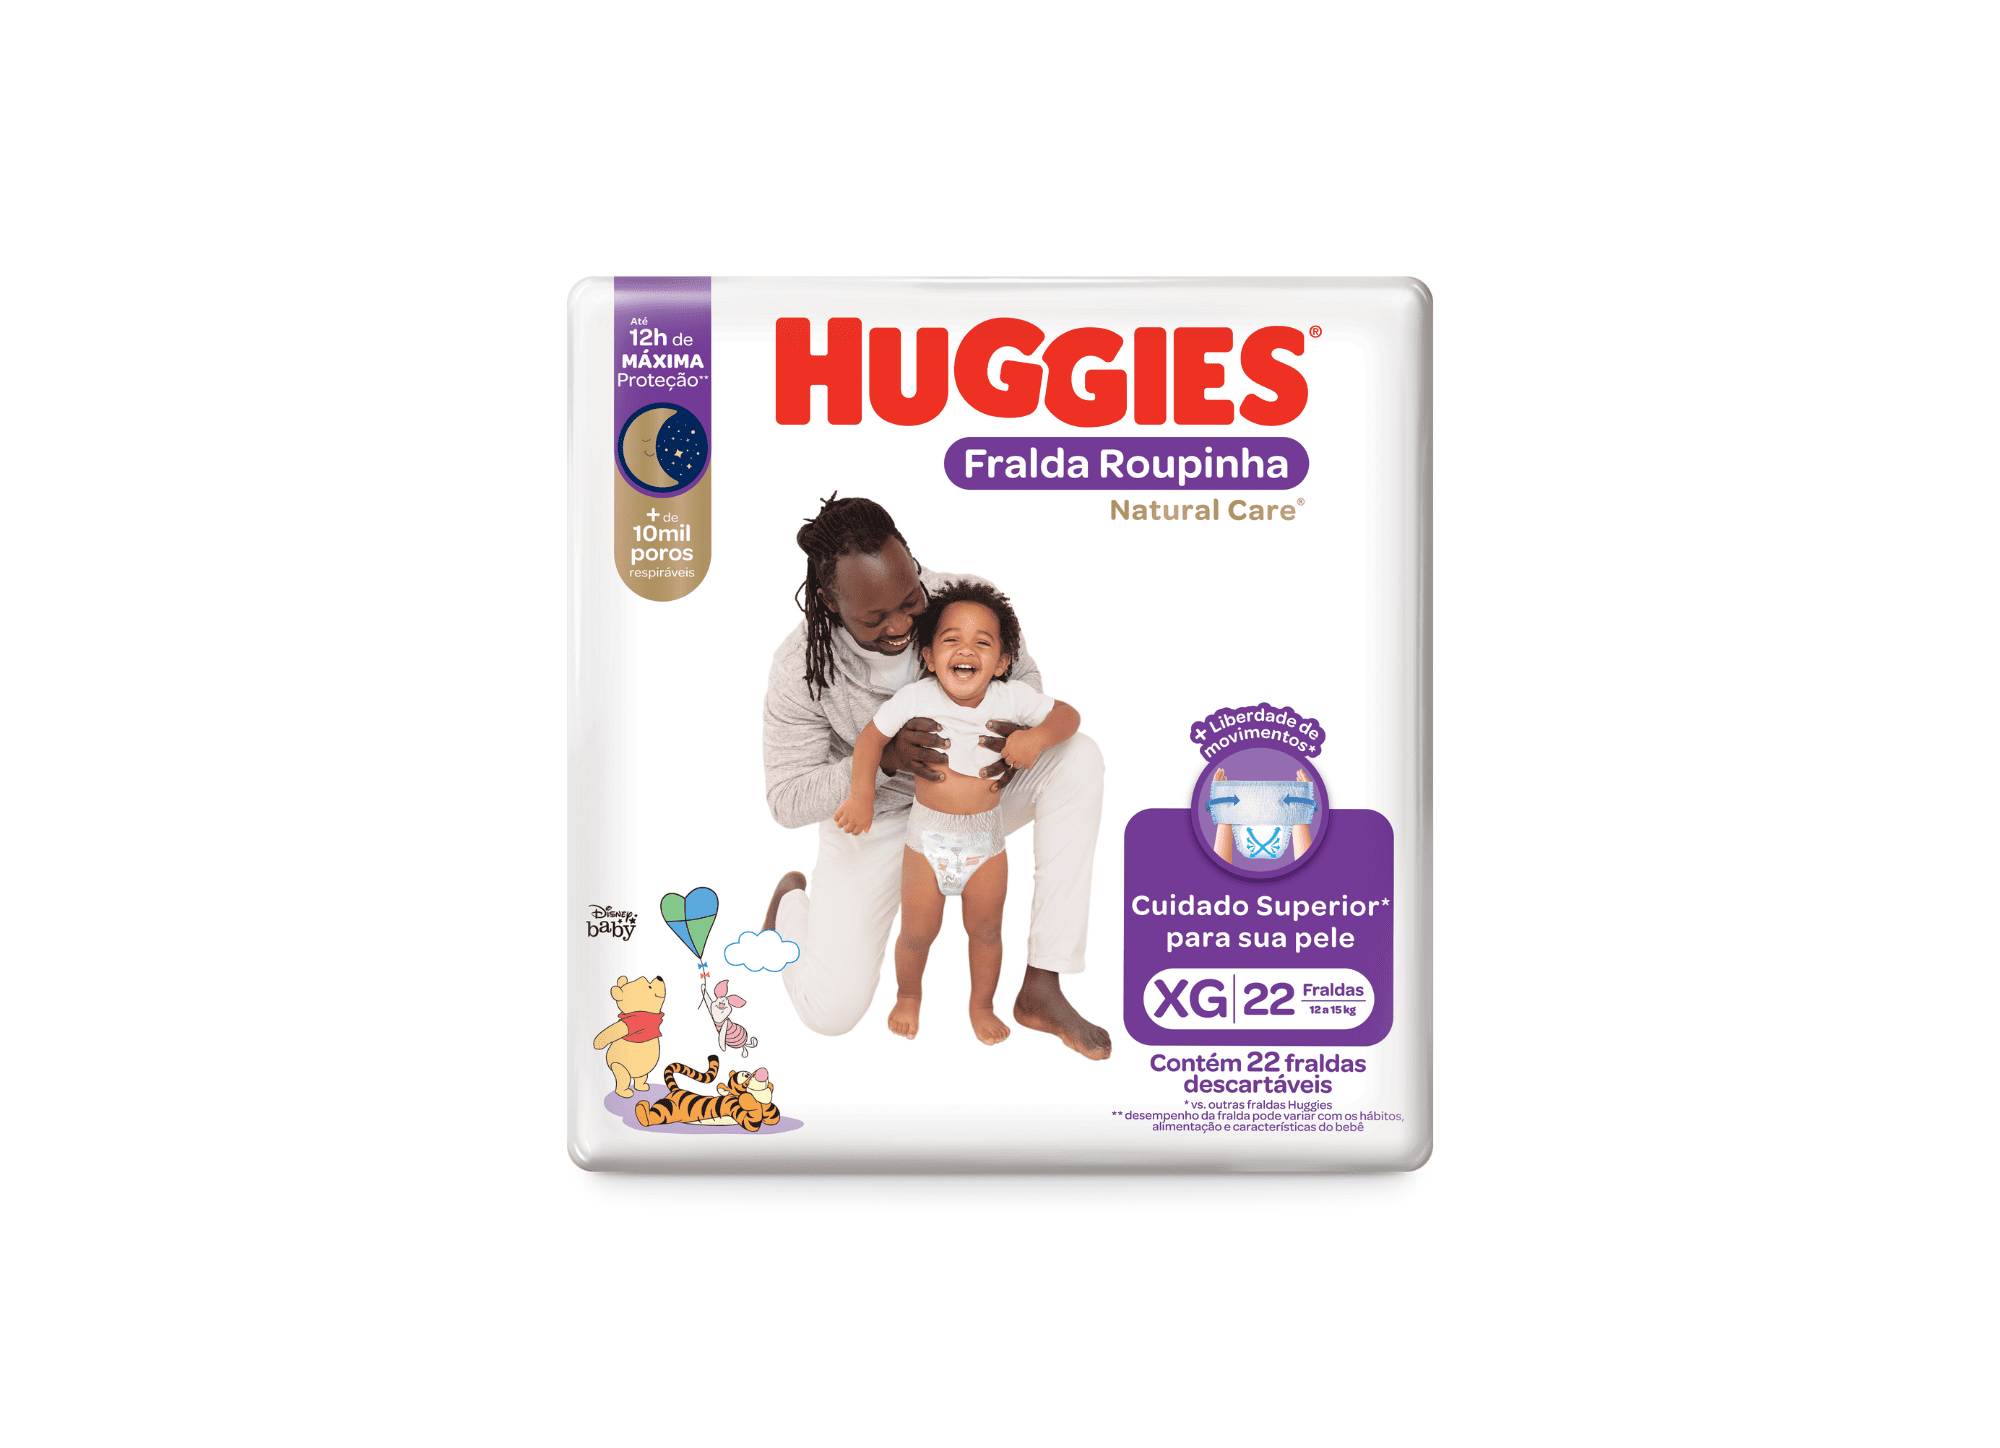 Featured image for “Huggies amplia portfólio com lançamento da fralda natural care roupinha”